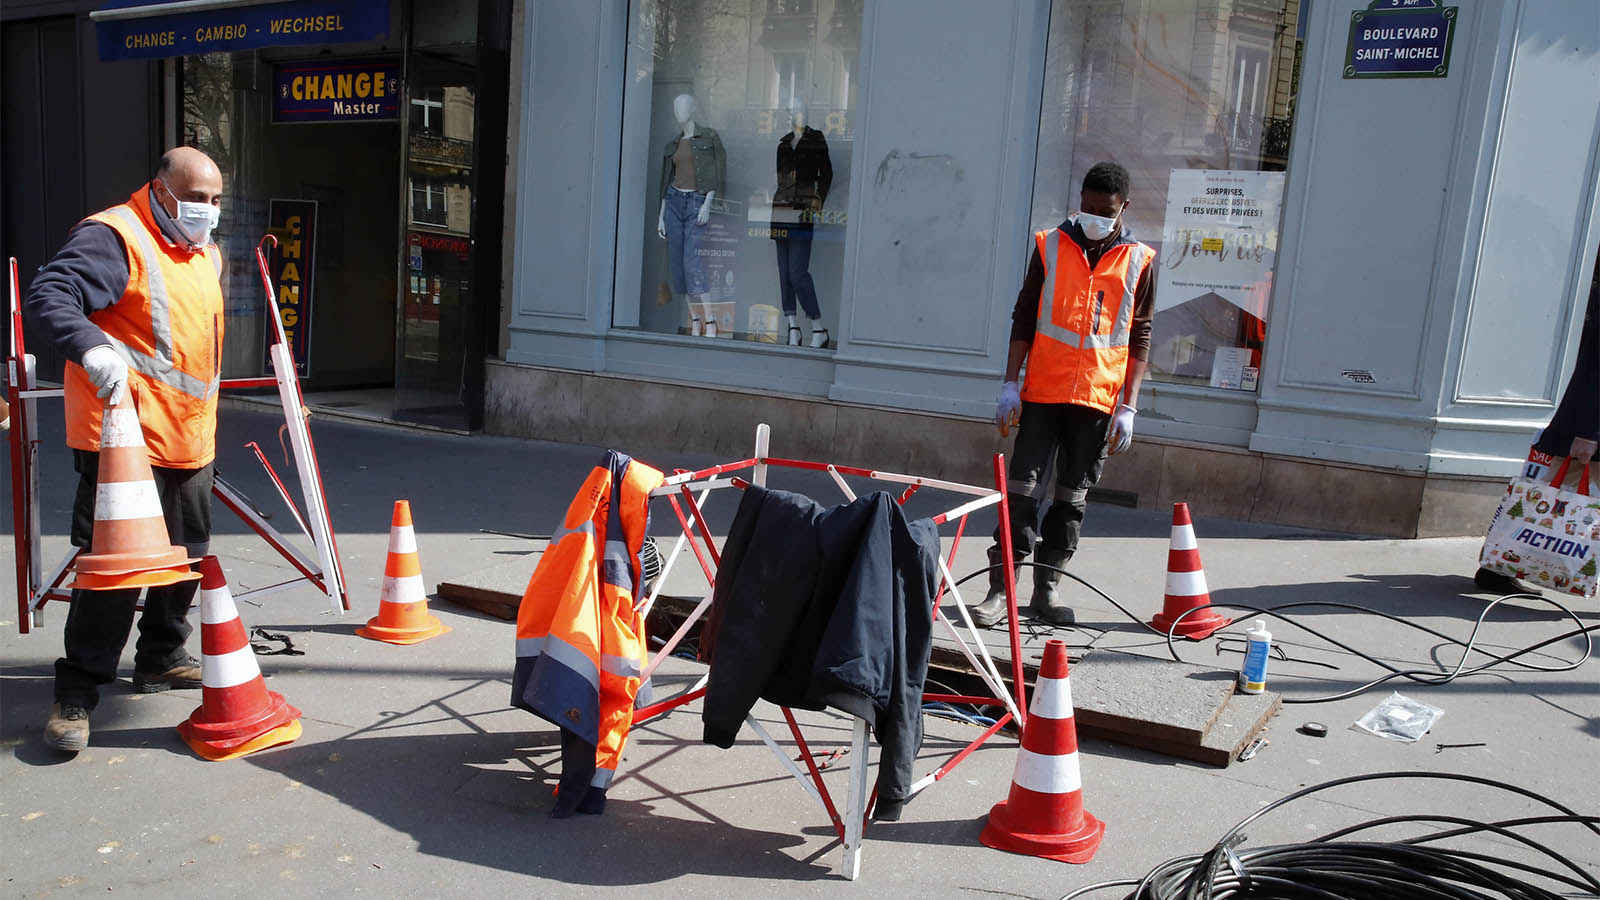 עובדים מתקנים תשתיות רשת בפריז בזמן משבר הקורונה. &quot;שכר המינימום צריך להיות מחושב על פי אינדיקטורים קבועים, שאי אפשר להתעלם מהם&quot; (צילום ארכיון: AP Photo/Francois Mori)